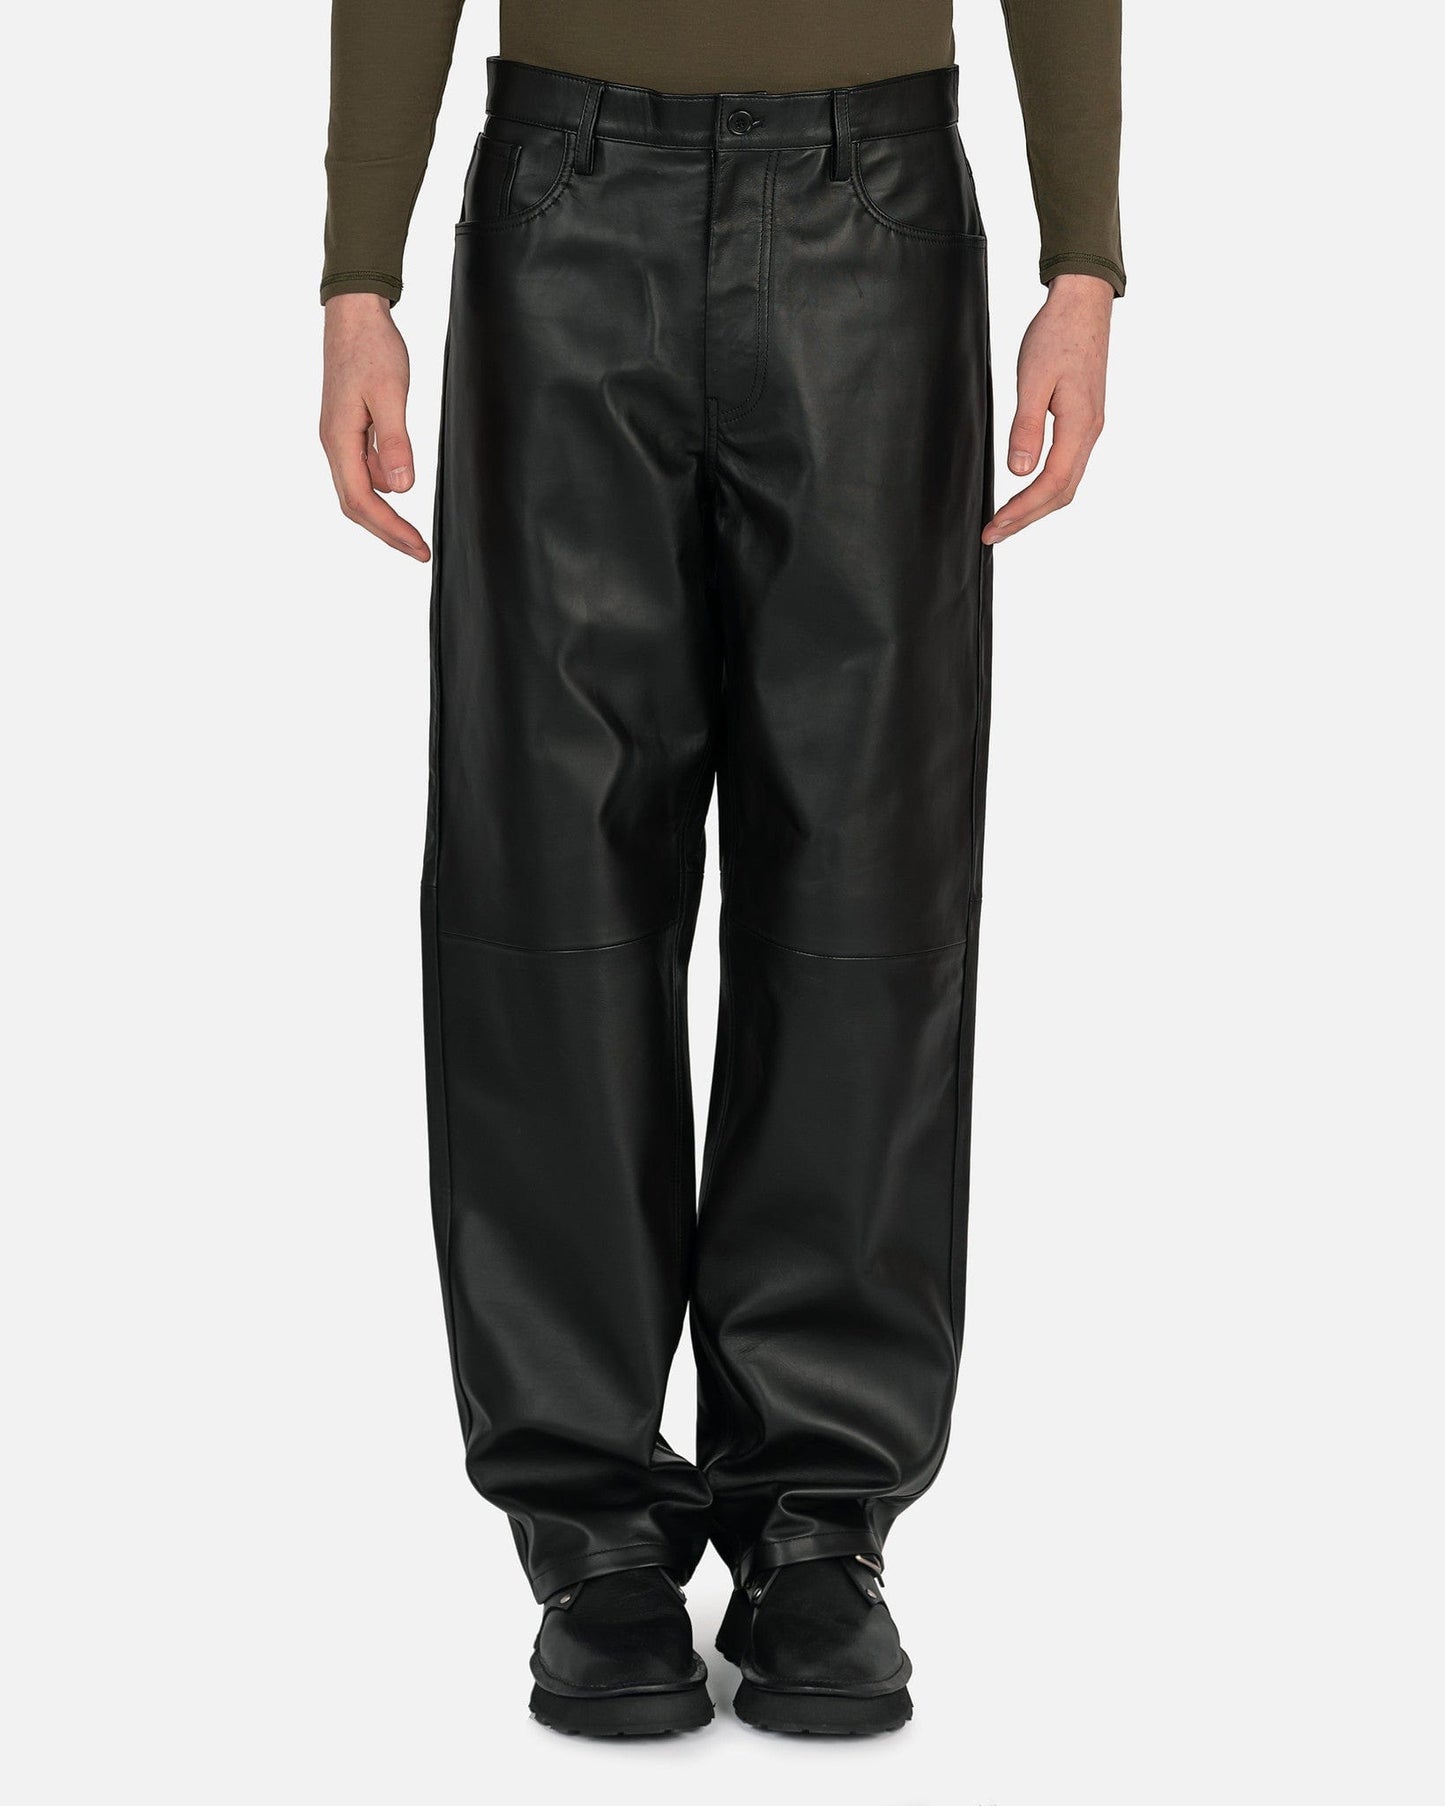 Dries Van Noten Men's Pants Line Leather Pants in Black